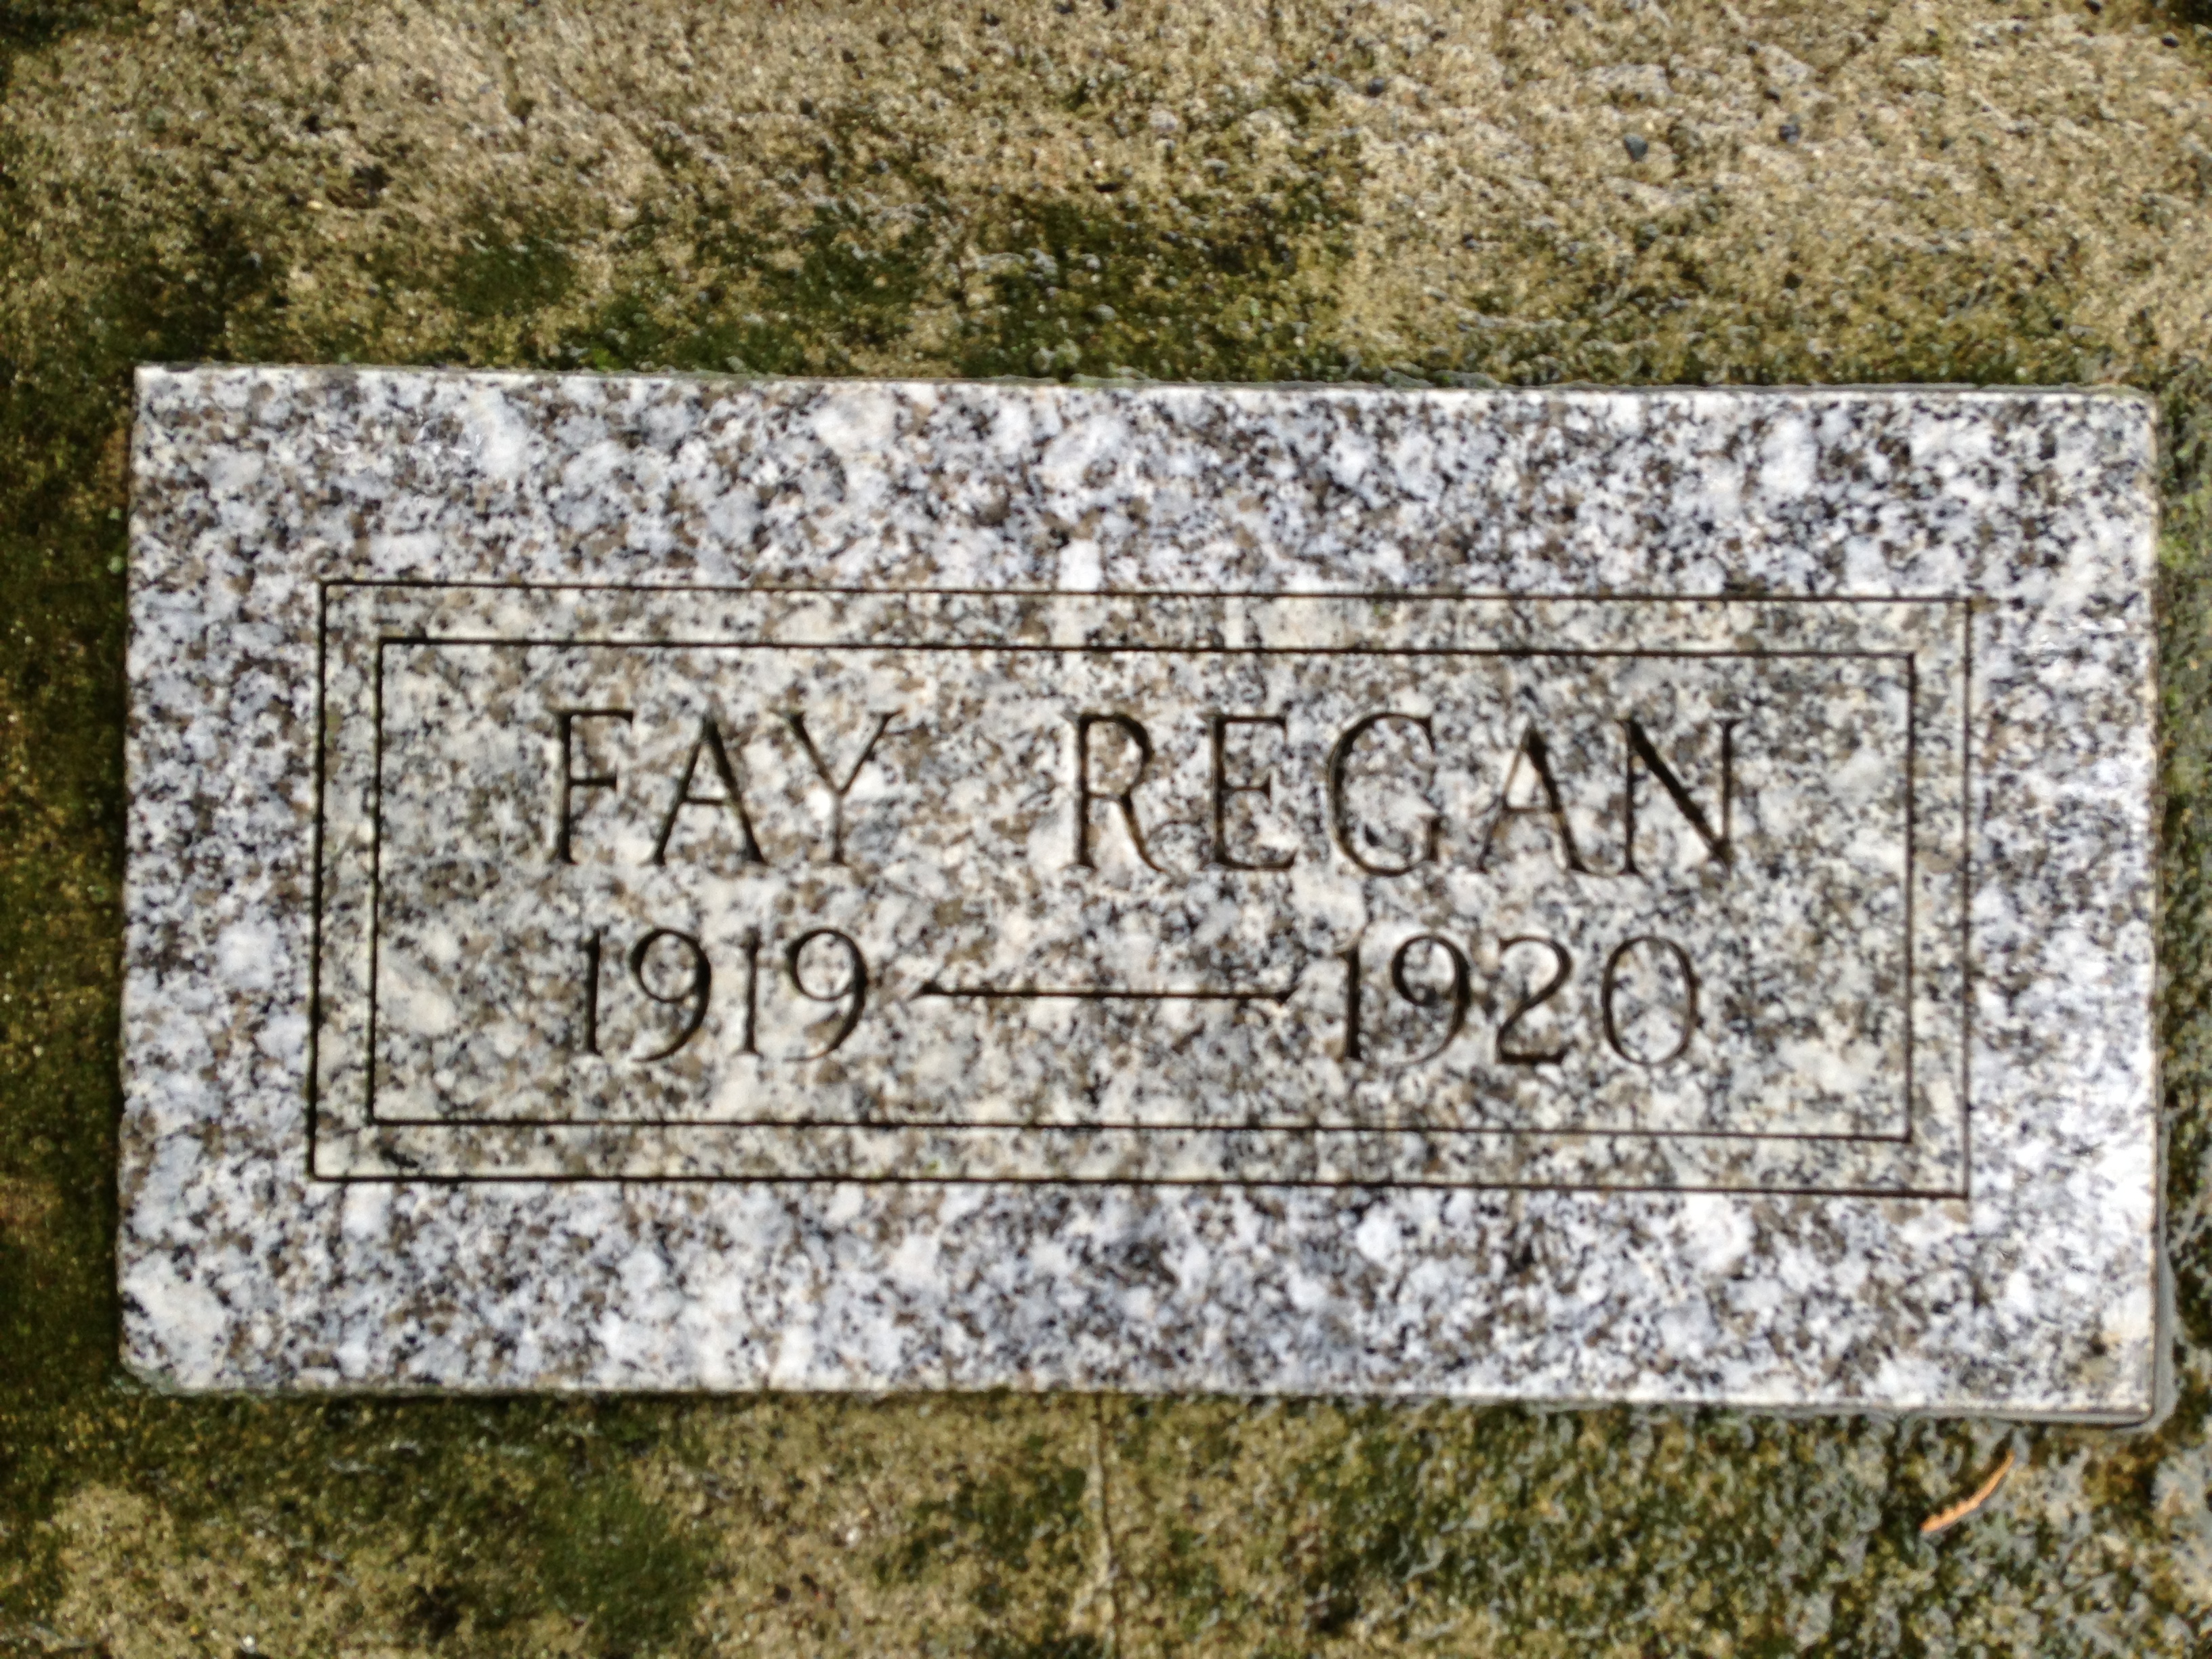 Faye regan